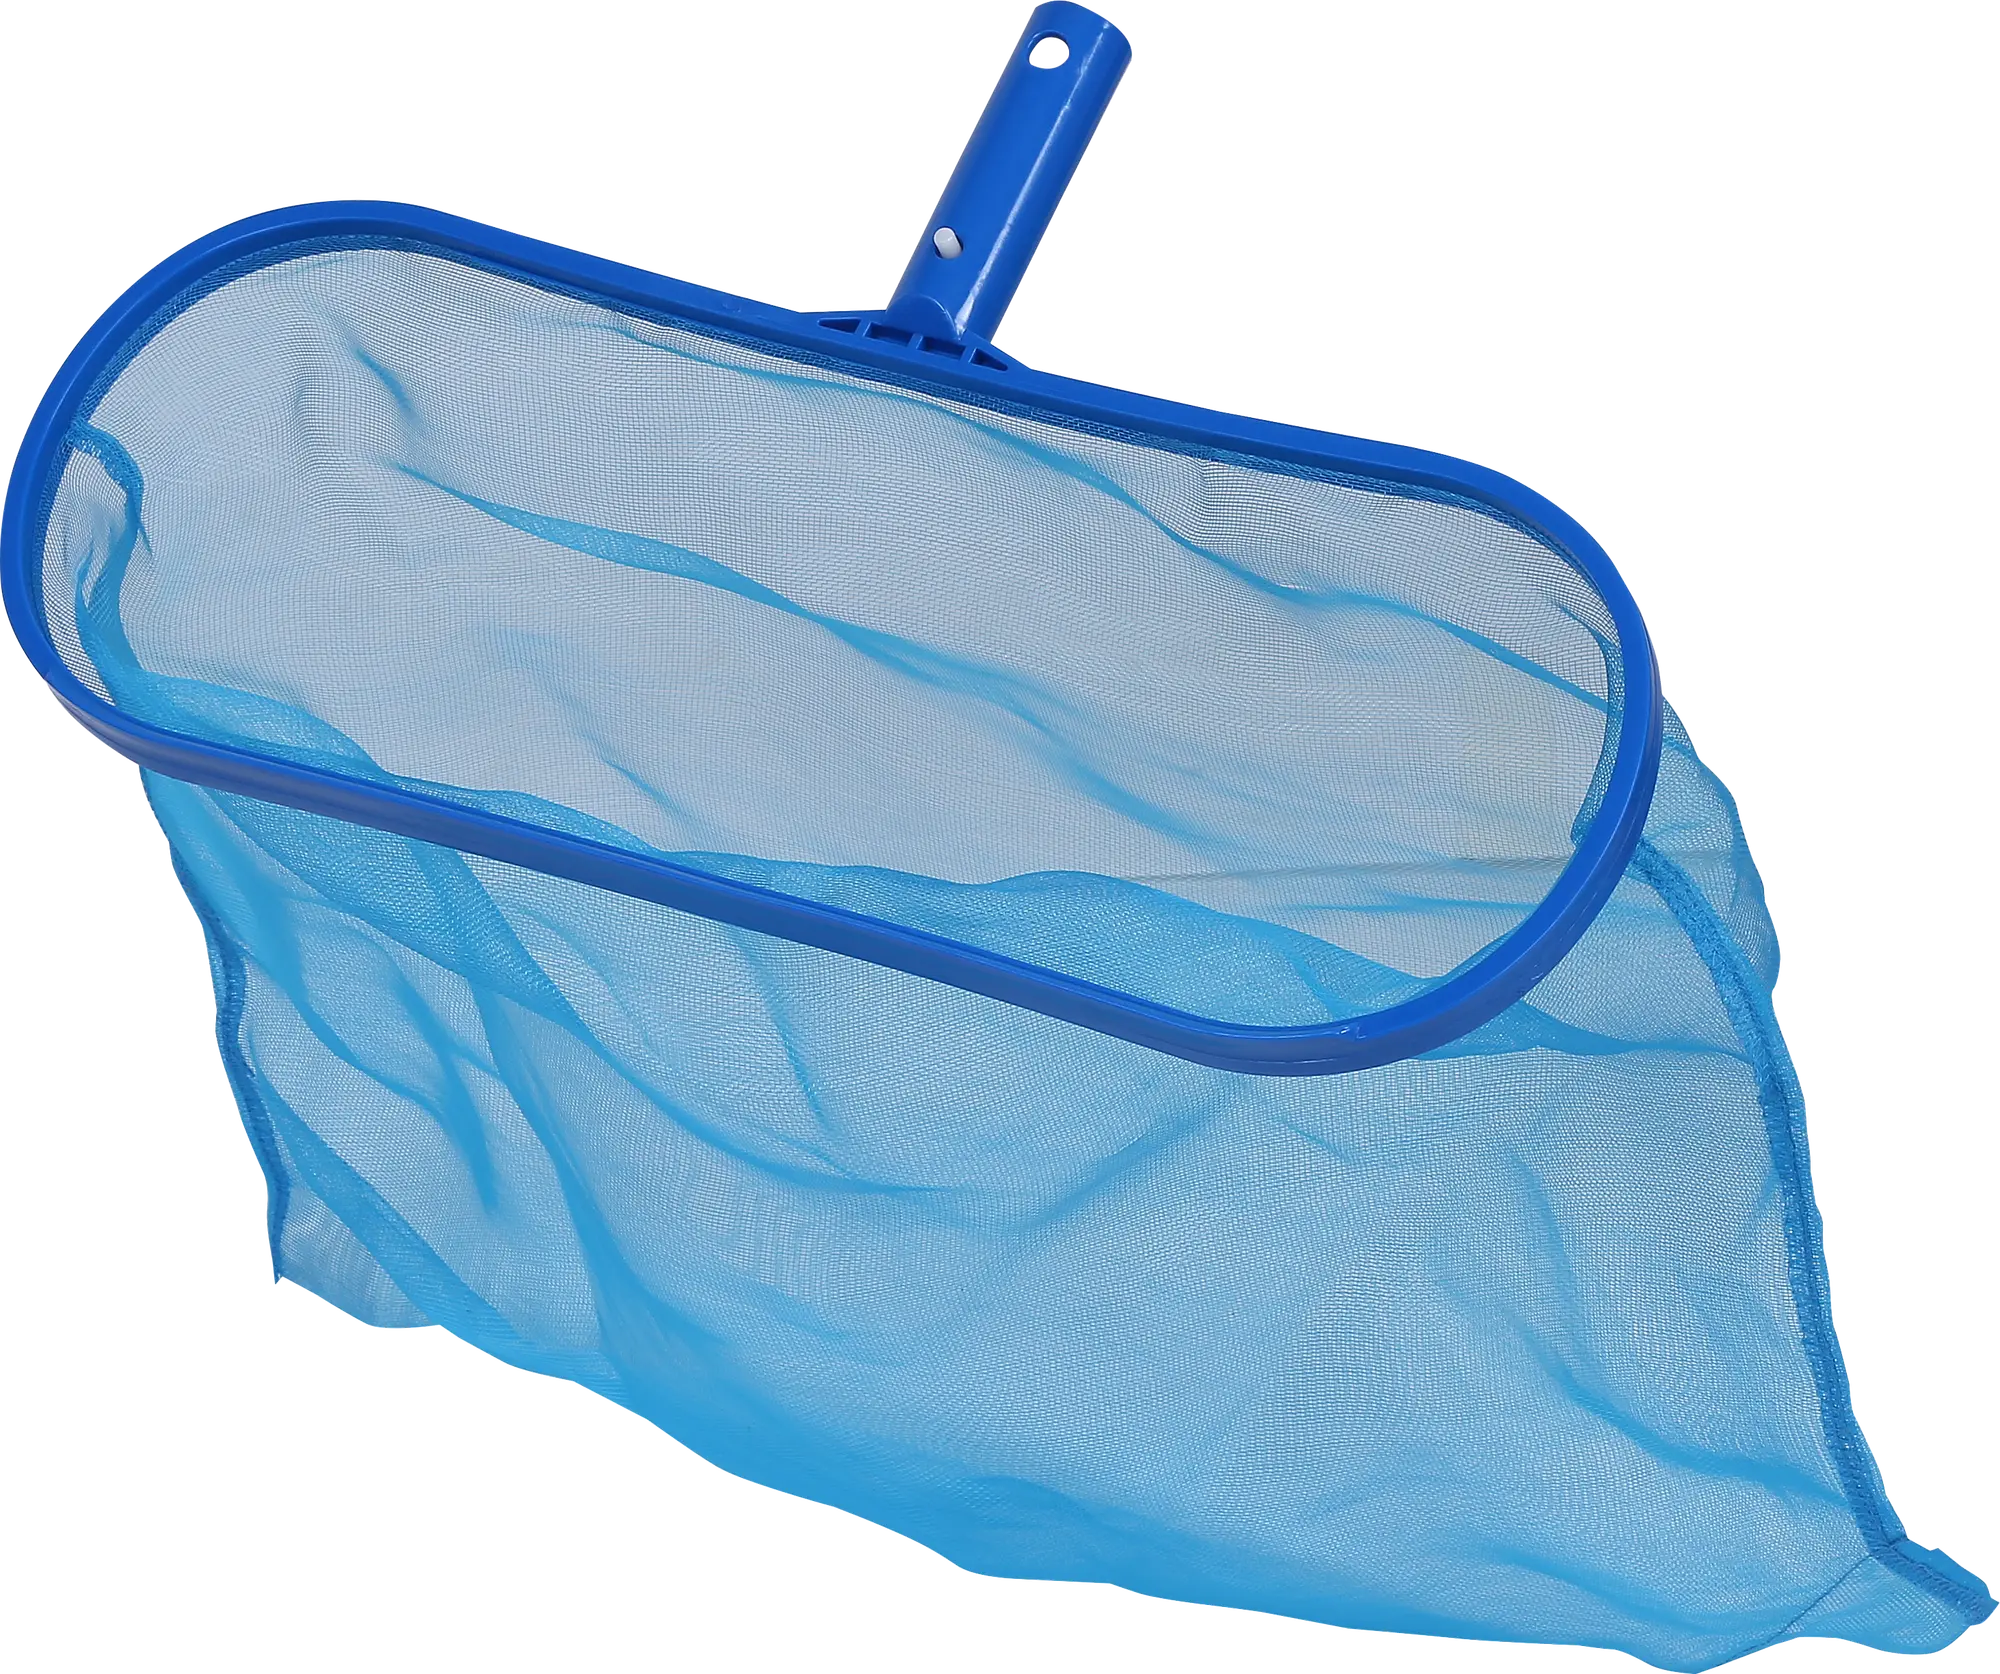 Recogehojas fondo / bolsa para piscina en azul reforzado